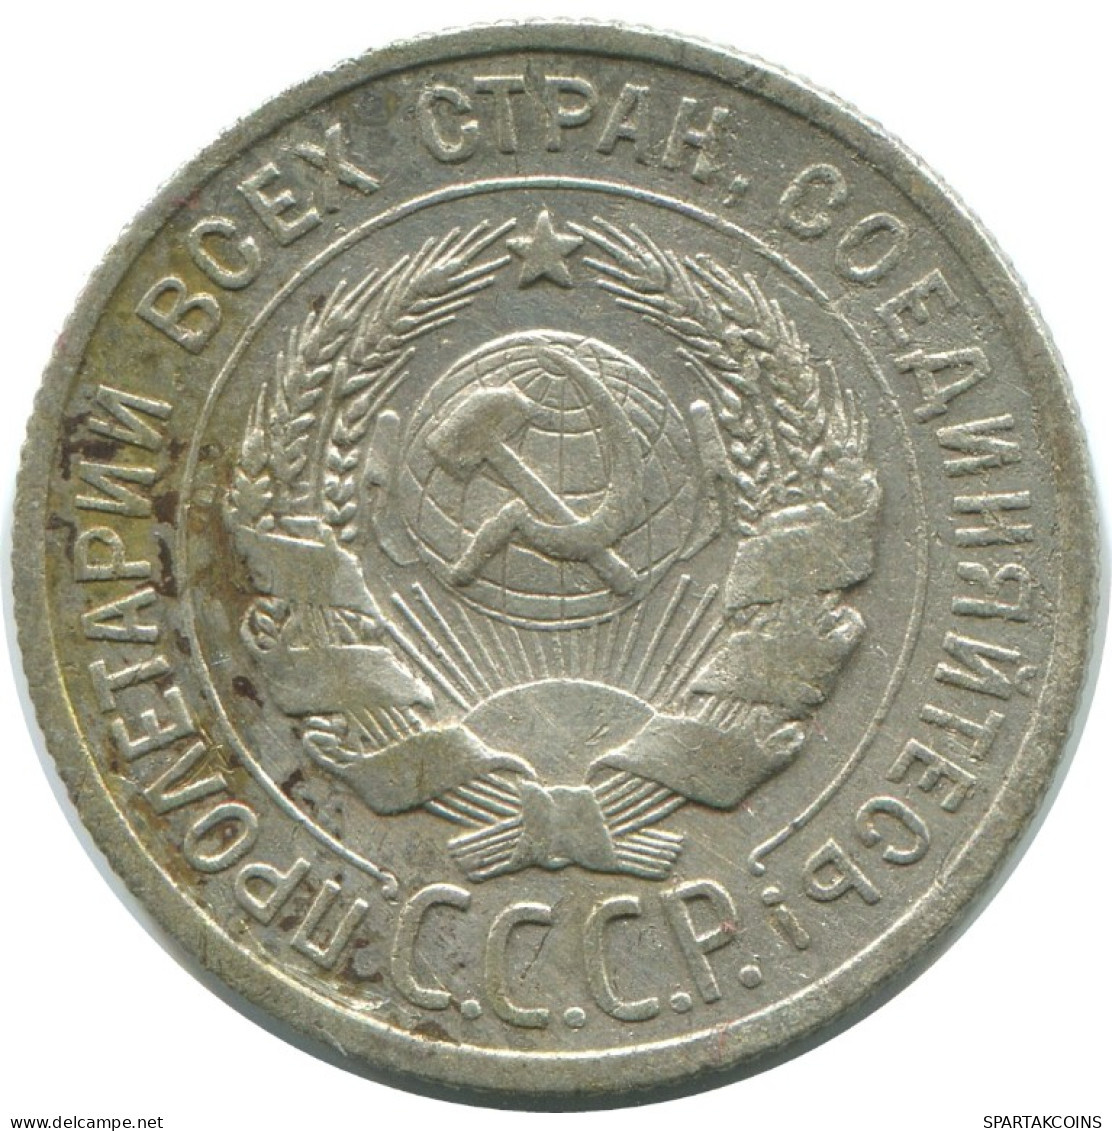 20 KOPEKS 1924 RUSSLAND RUSSIA USSR SILBER Münze HIGH GRADE #AF295.4.D.A - Russie